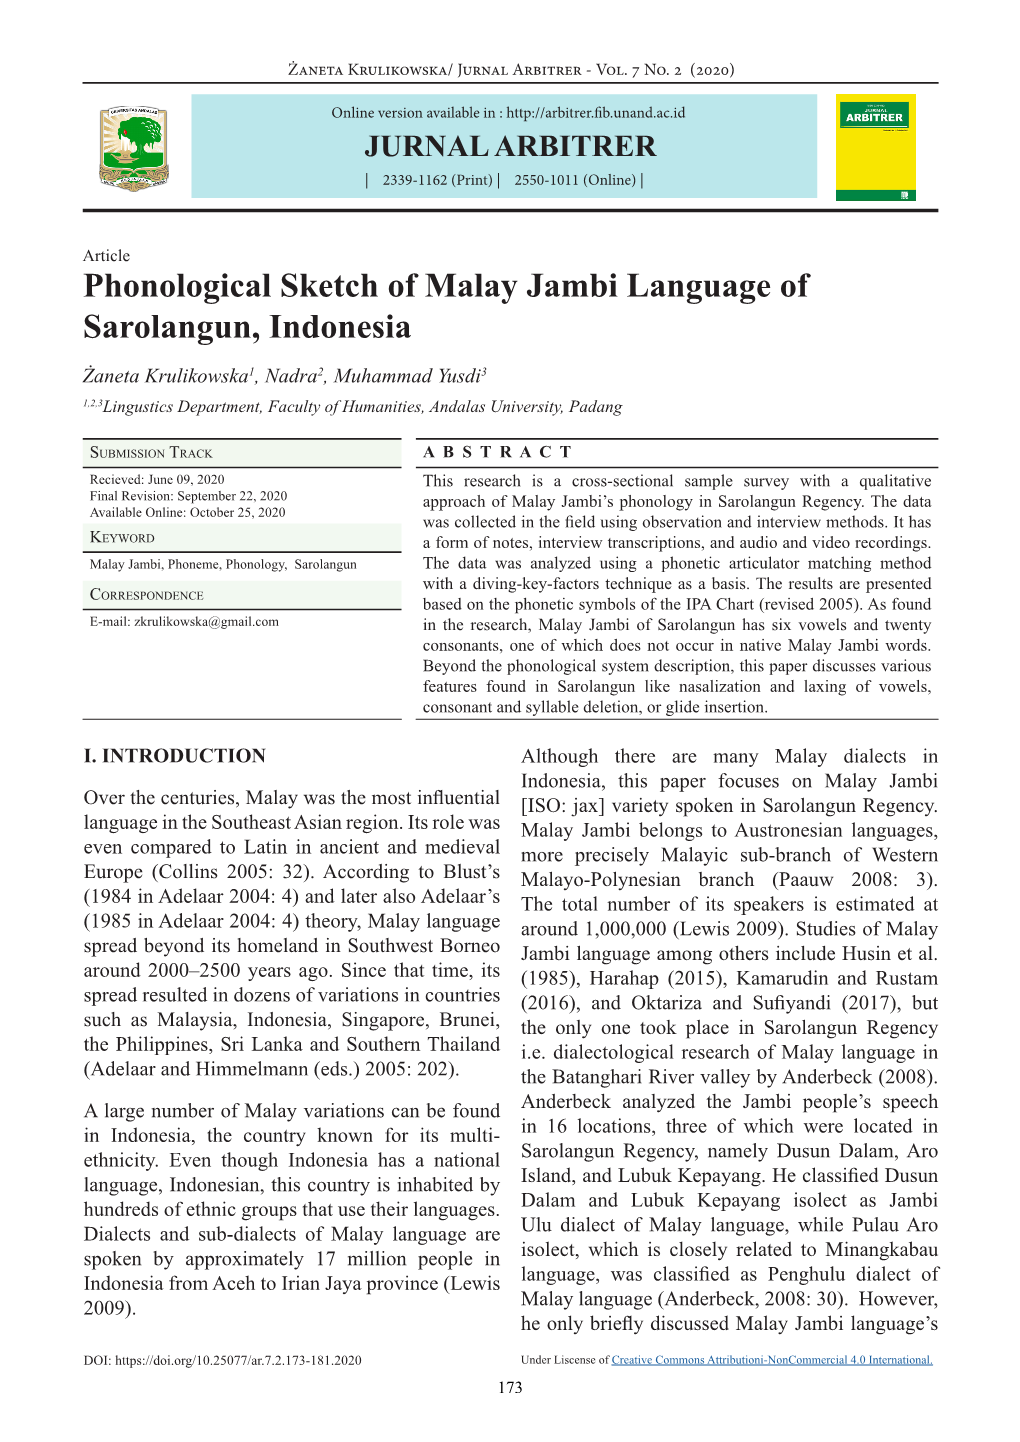 Phonological Sketch of Malay Jambi Language of Sarolangun, Indonesia